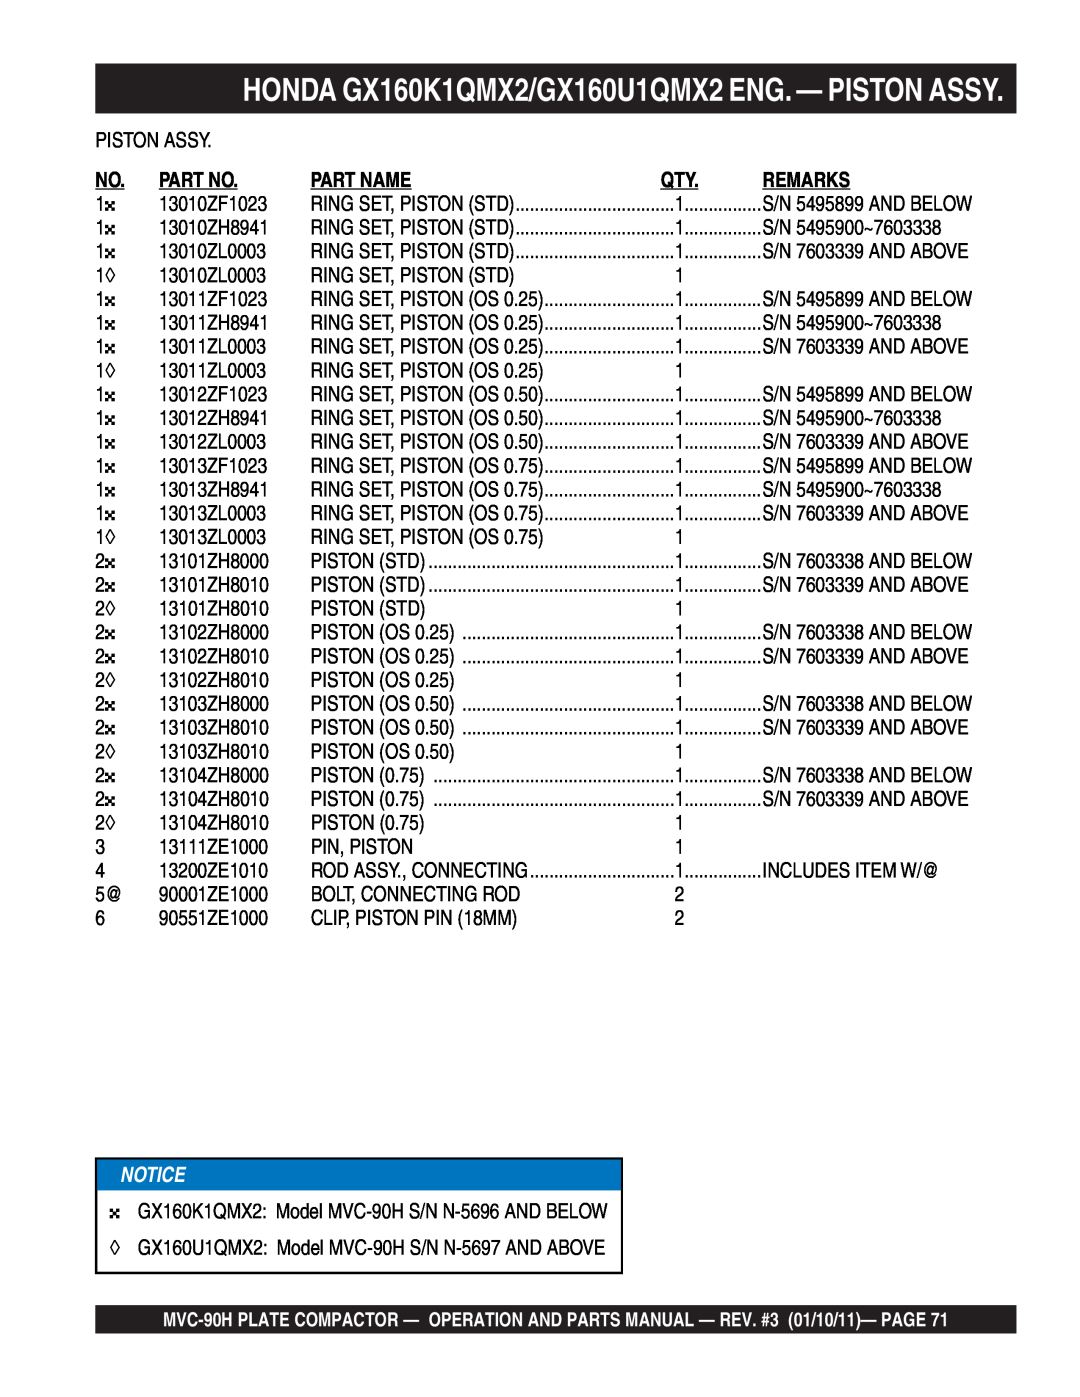 Multiquip MVC-90H manual HONDA GX160K1QMX2/GX160U1QMX2 ENG. - PISTON ASSY, Part Name, Remarks 